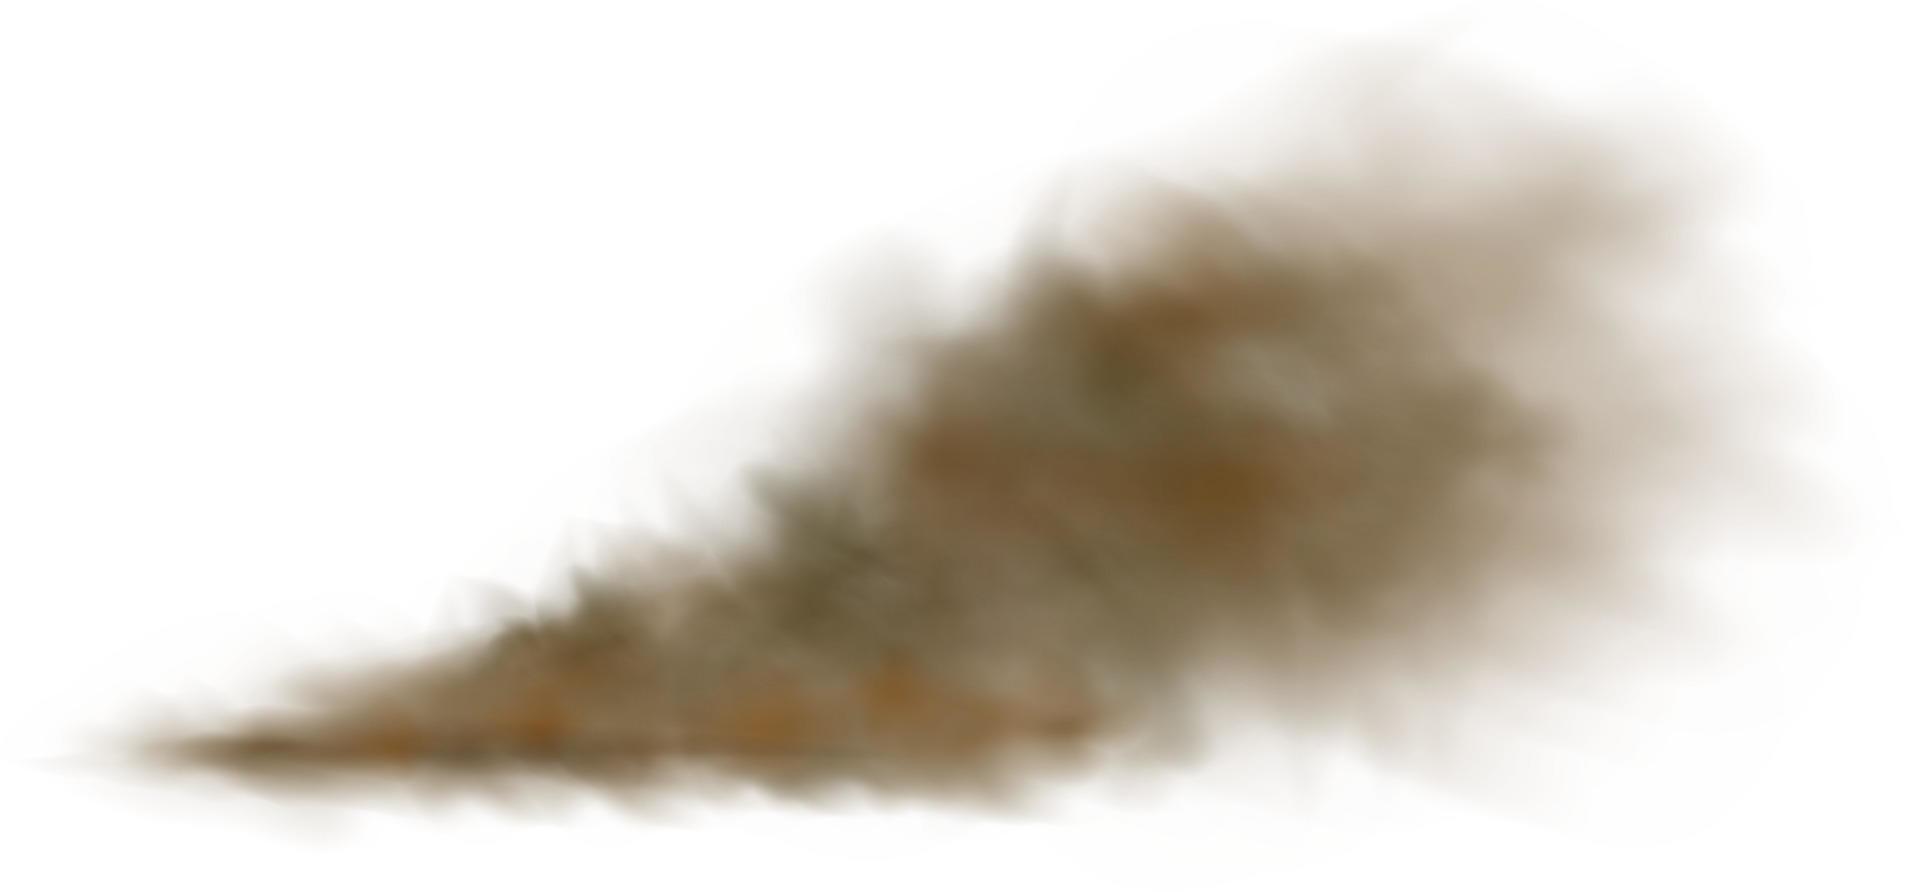 fundo de uma nuvem de poeira marrom e areia com partículas de areia seca e sujeira a voar. vetor